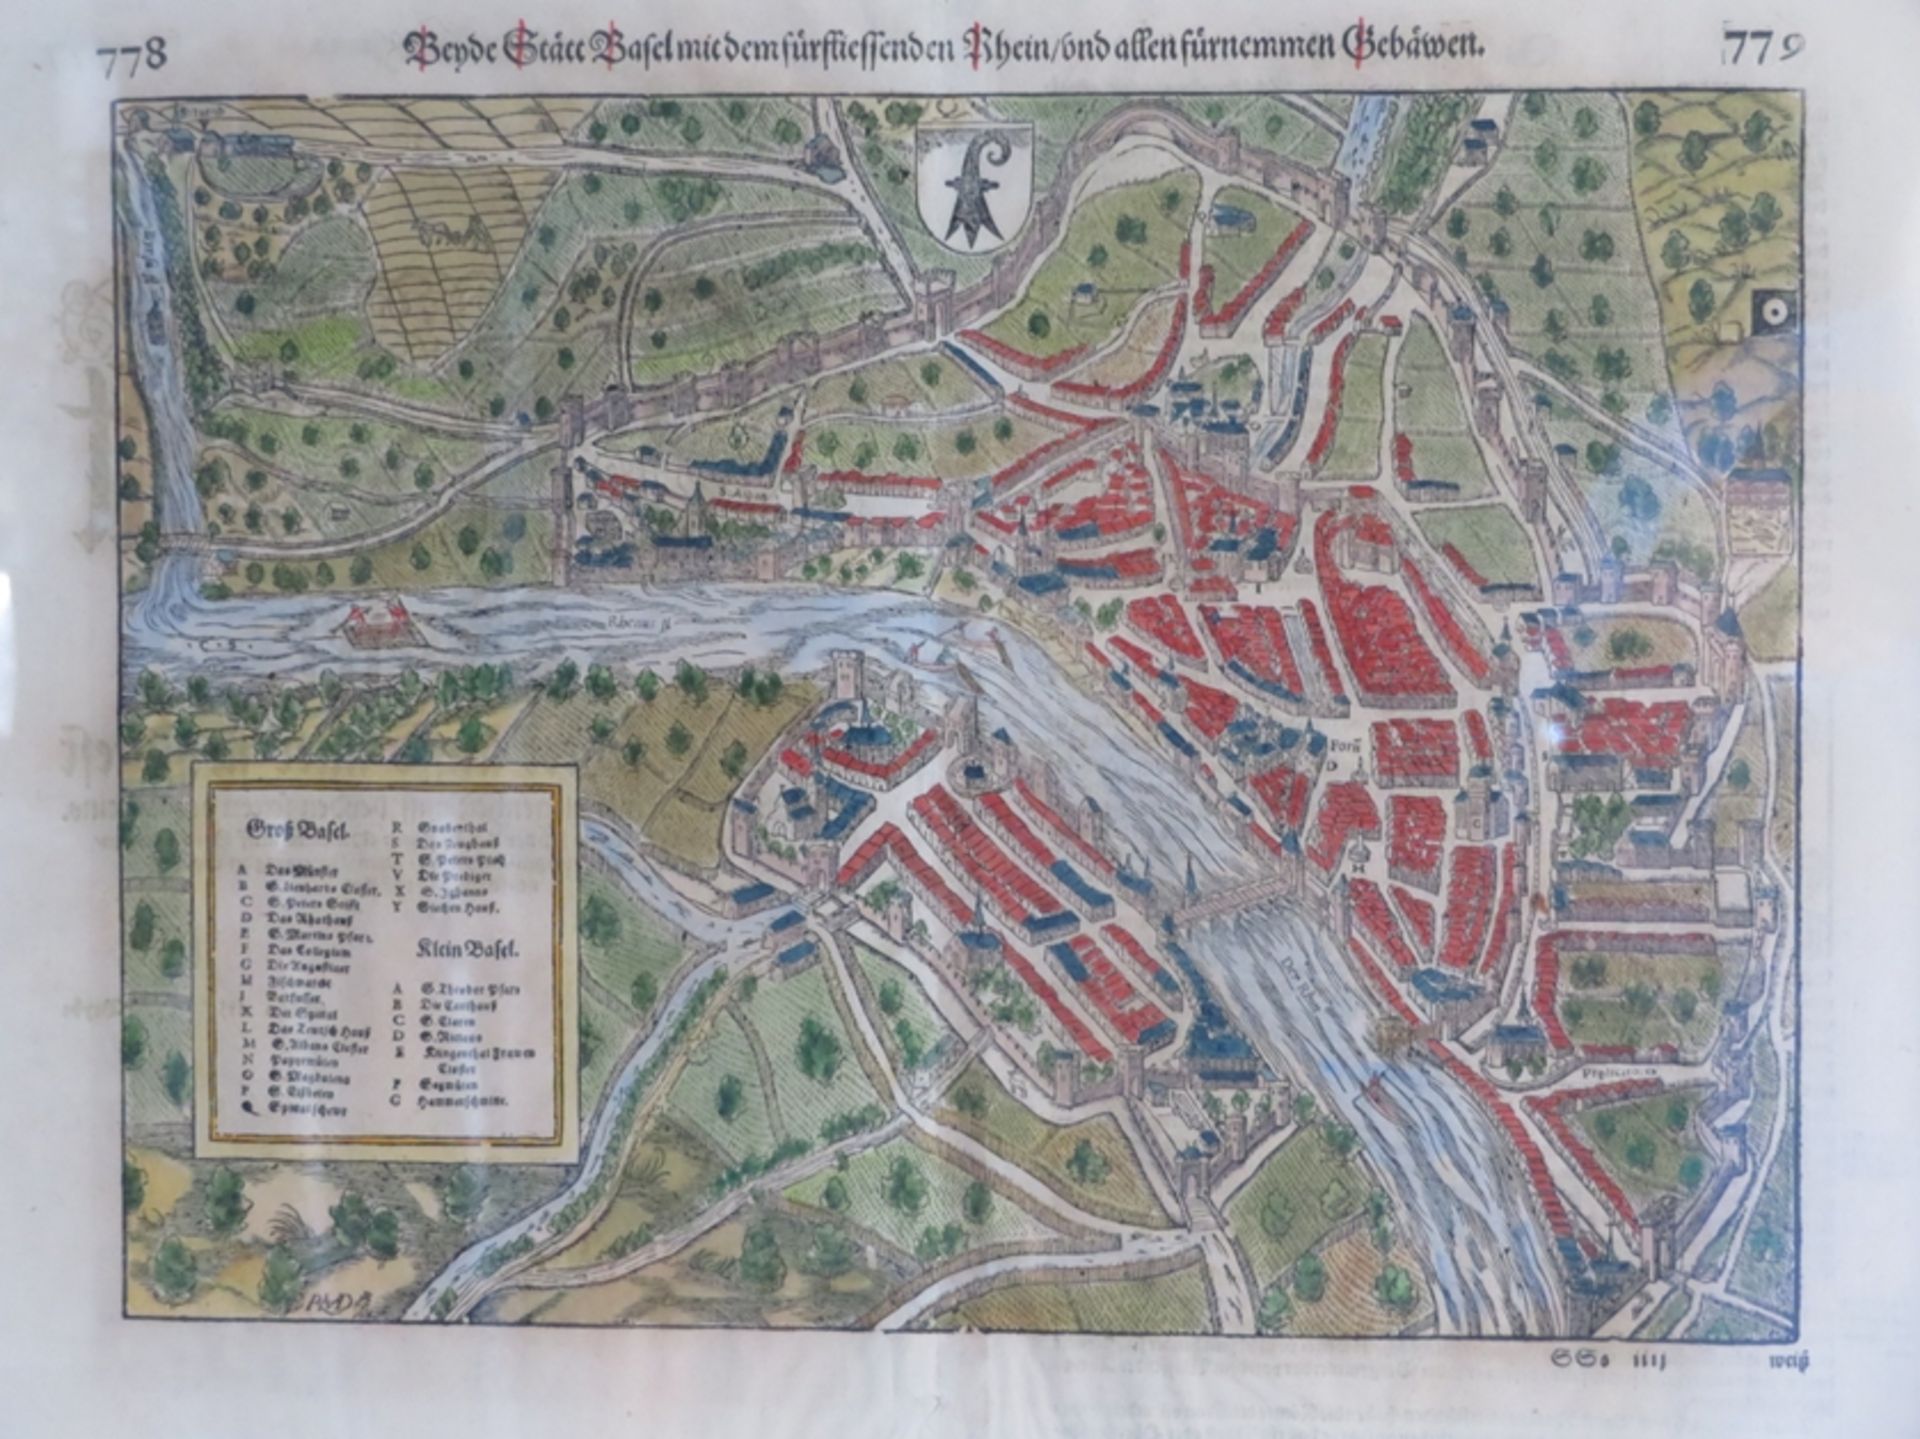 Münster, Sebastian,1488 - 1552, Nieder-Ingelheim - Basel,